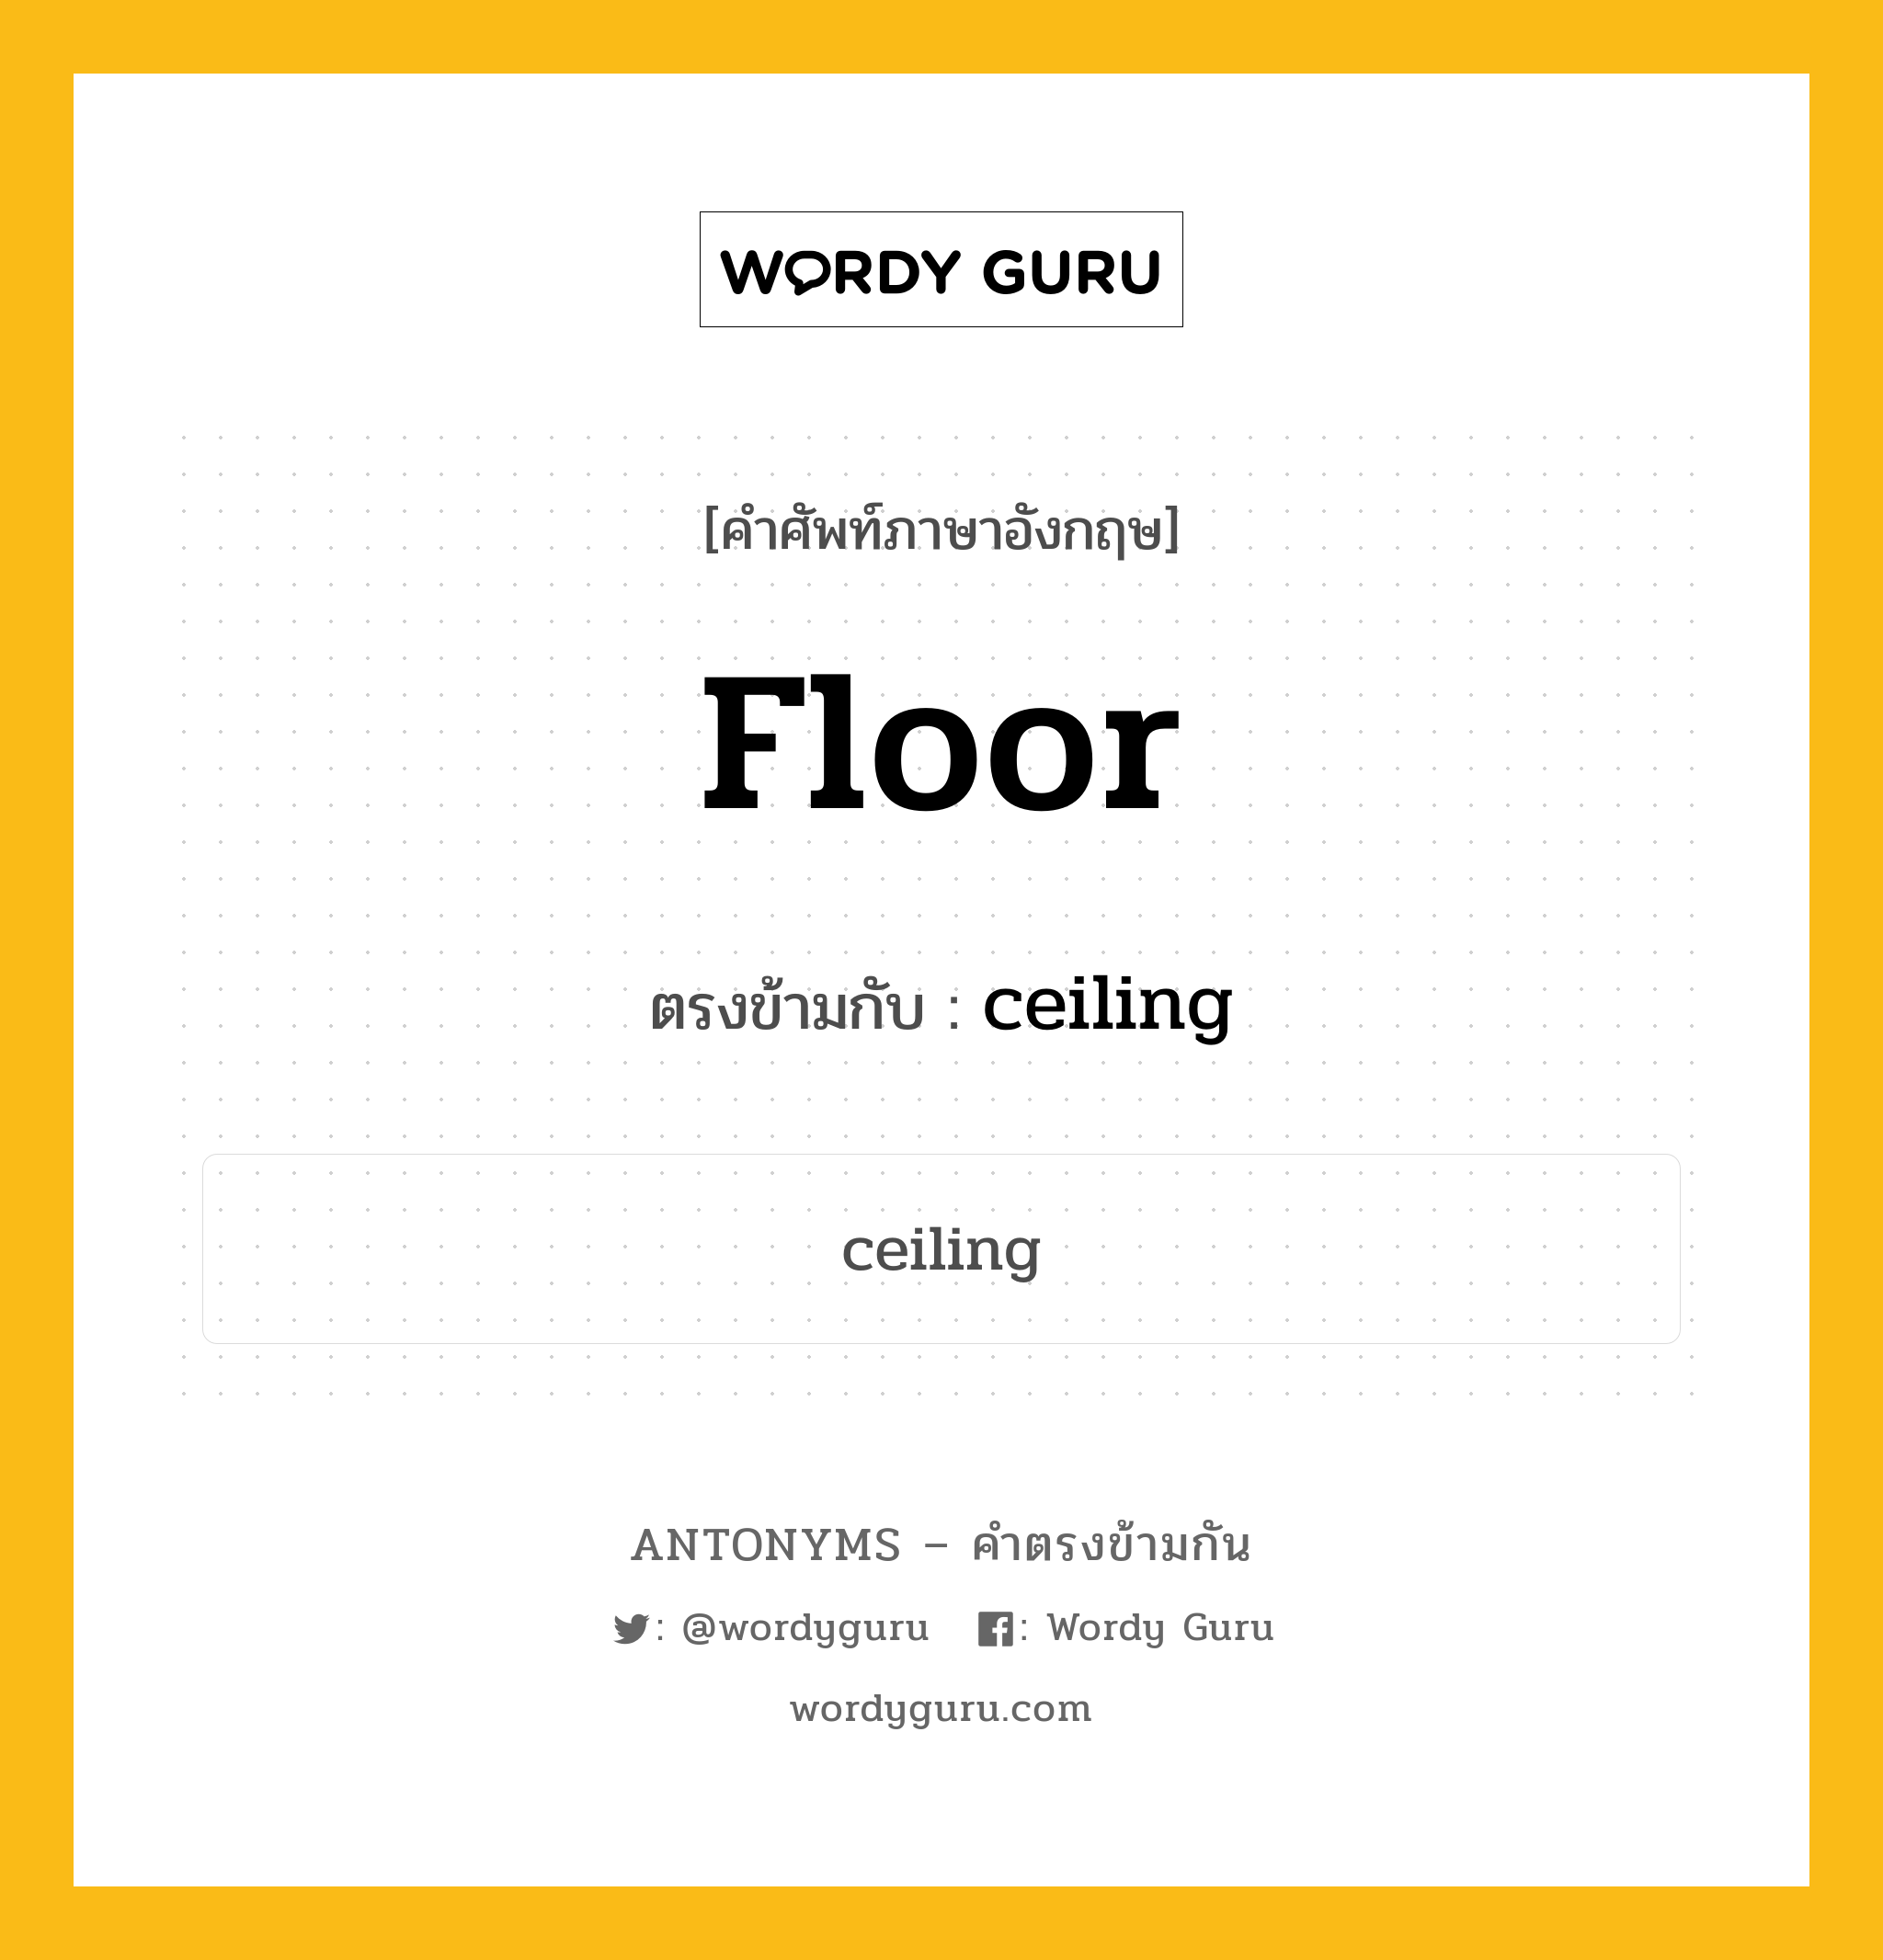 floor เป็นคำตรงข้ามกับคำไหนบ้าง?, คำศัพท์ภาษาอังกฤษ floor ตรงข้ามกับ ceiling หมวด ceiling